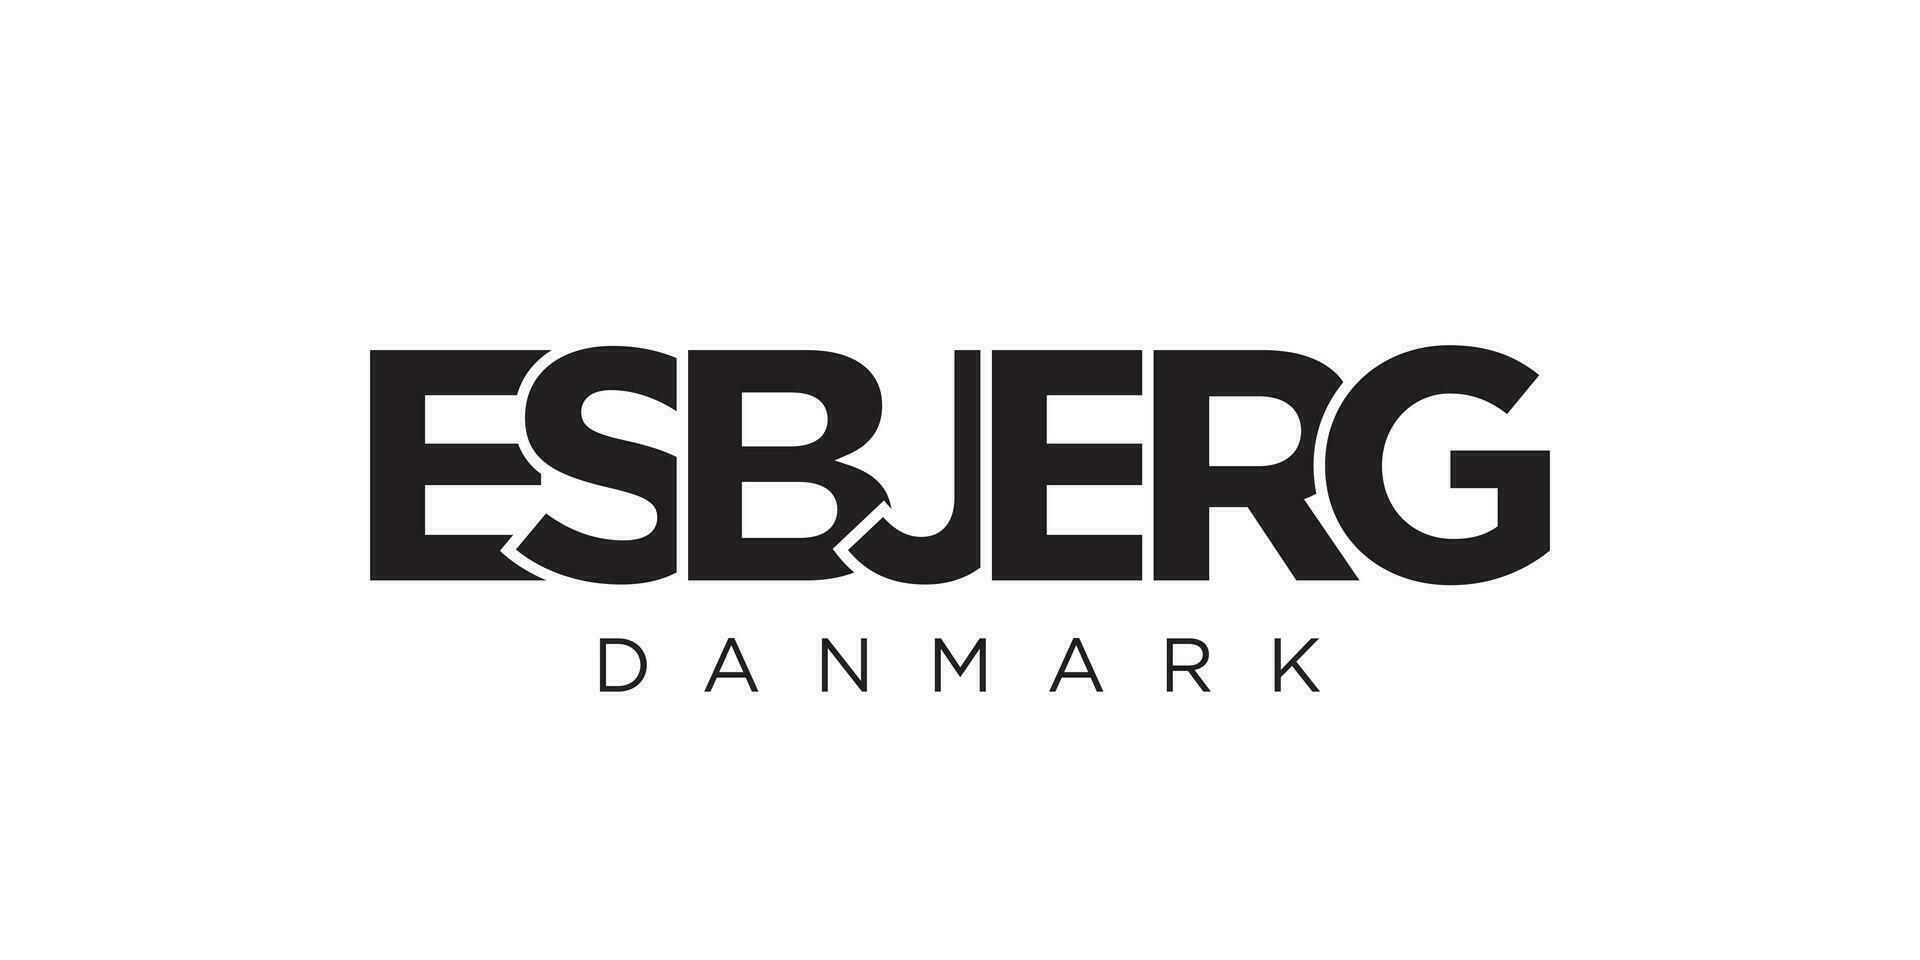 esbjerg i de Danmark emblem. de design funktioner en geometrisk stil, vektor illustration med djärv typografi i en modern font. de grafisk slogan text.